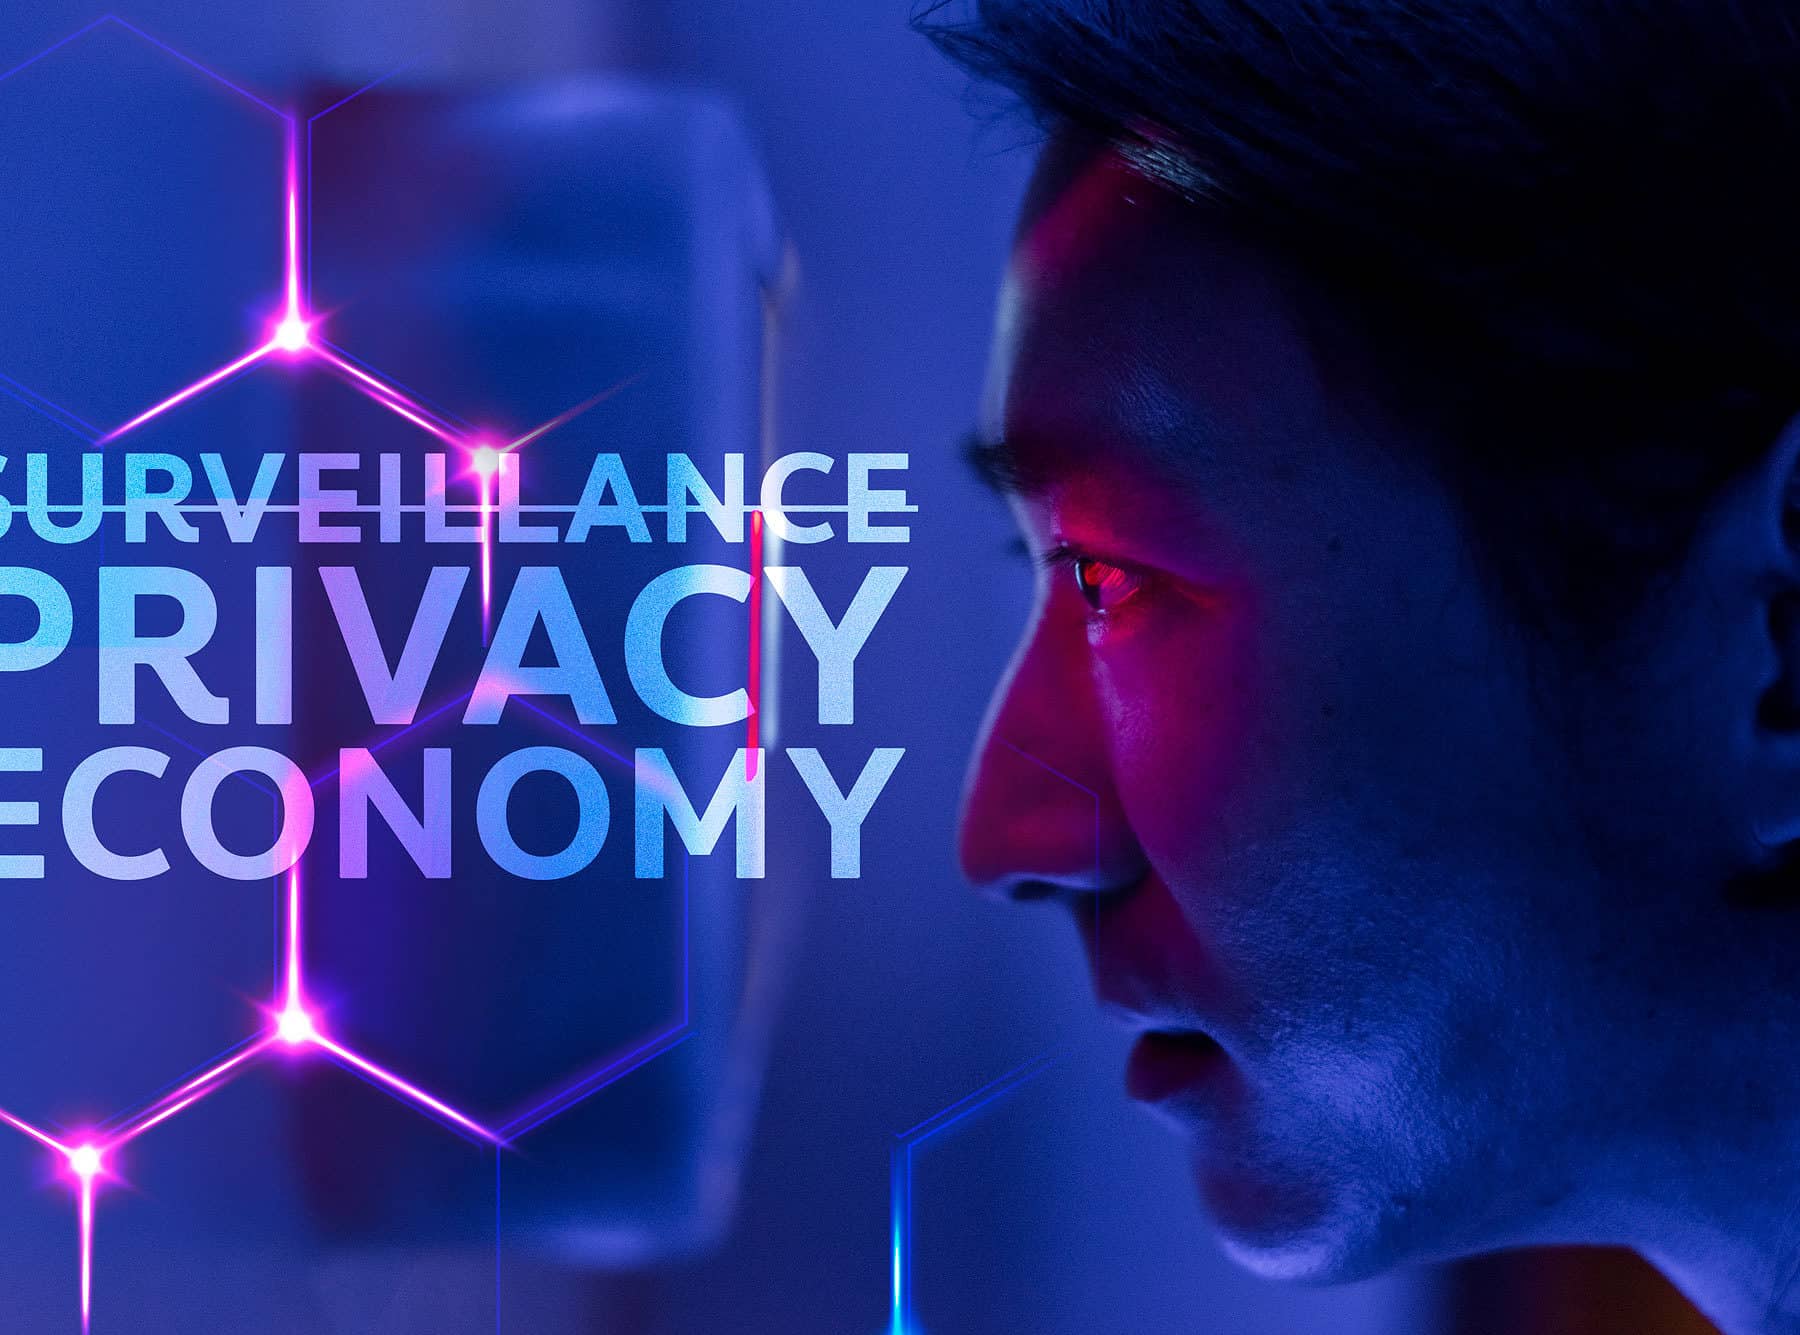 จาก Surveillance สู่ Privacy Economy ธุรกิจยุคใหม่ต้องเคารพความเป็นส่วนตัว